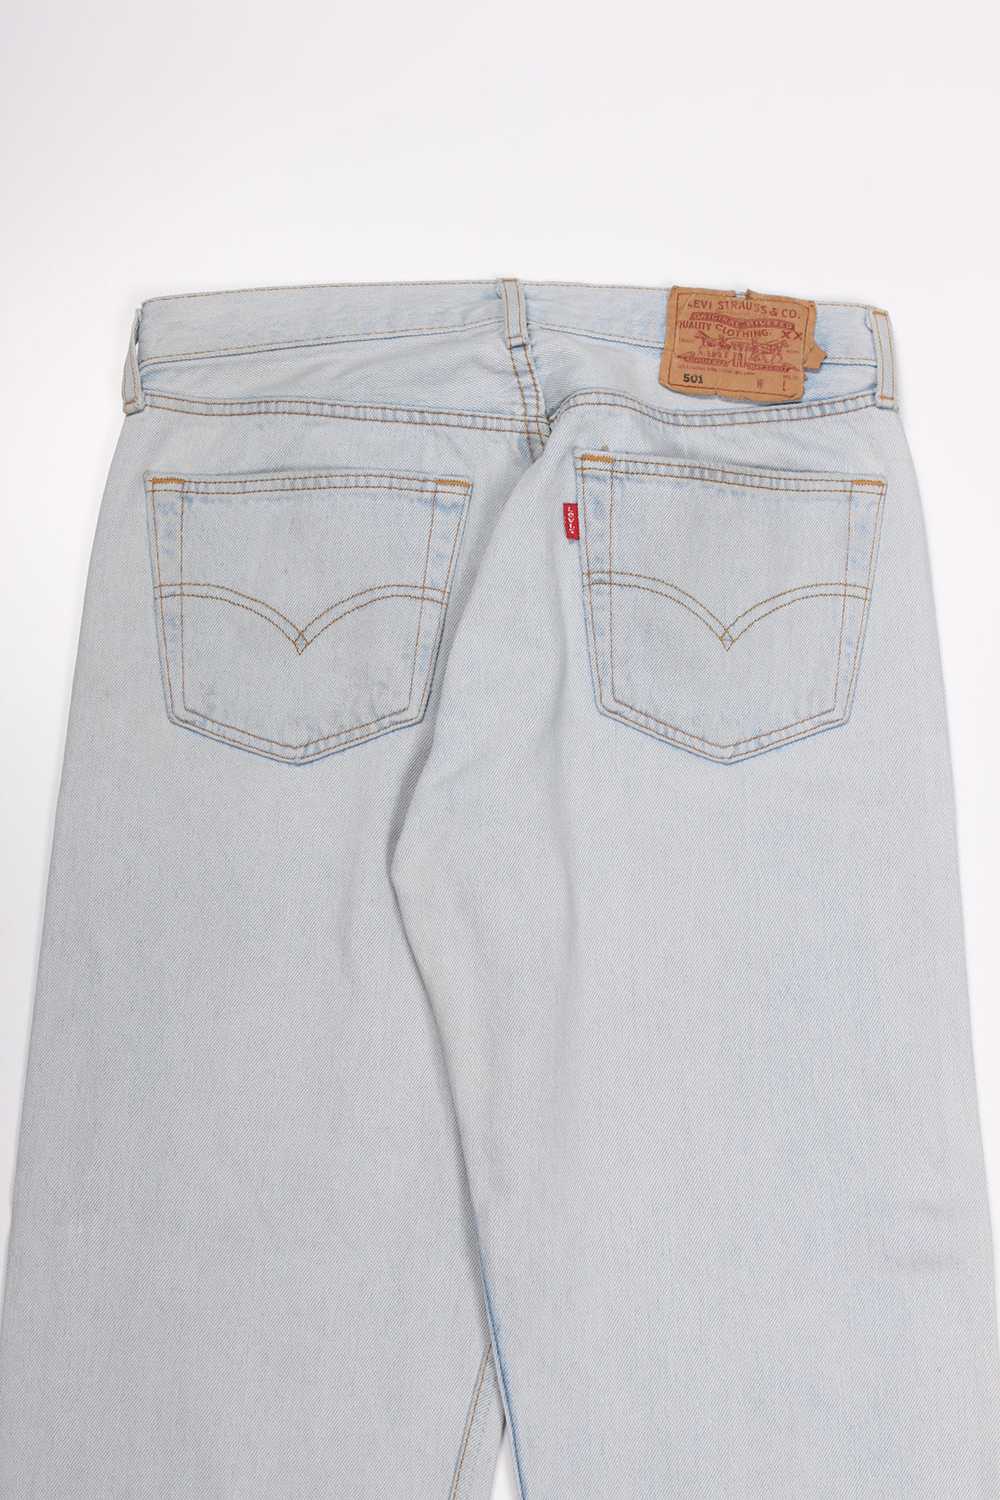 Men's Vintage Levi's 501 Denim Jeans W32 x L30 - image 3